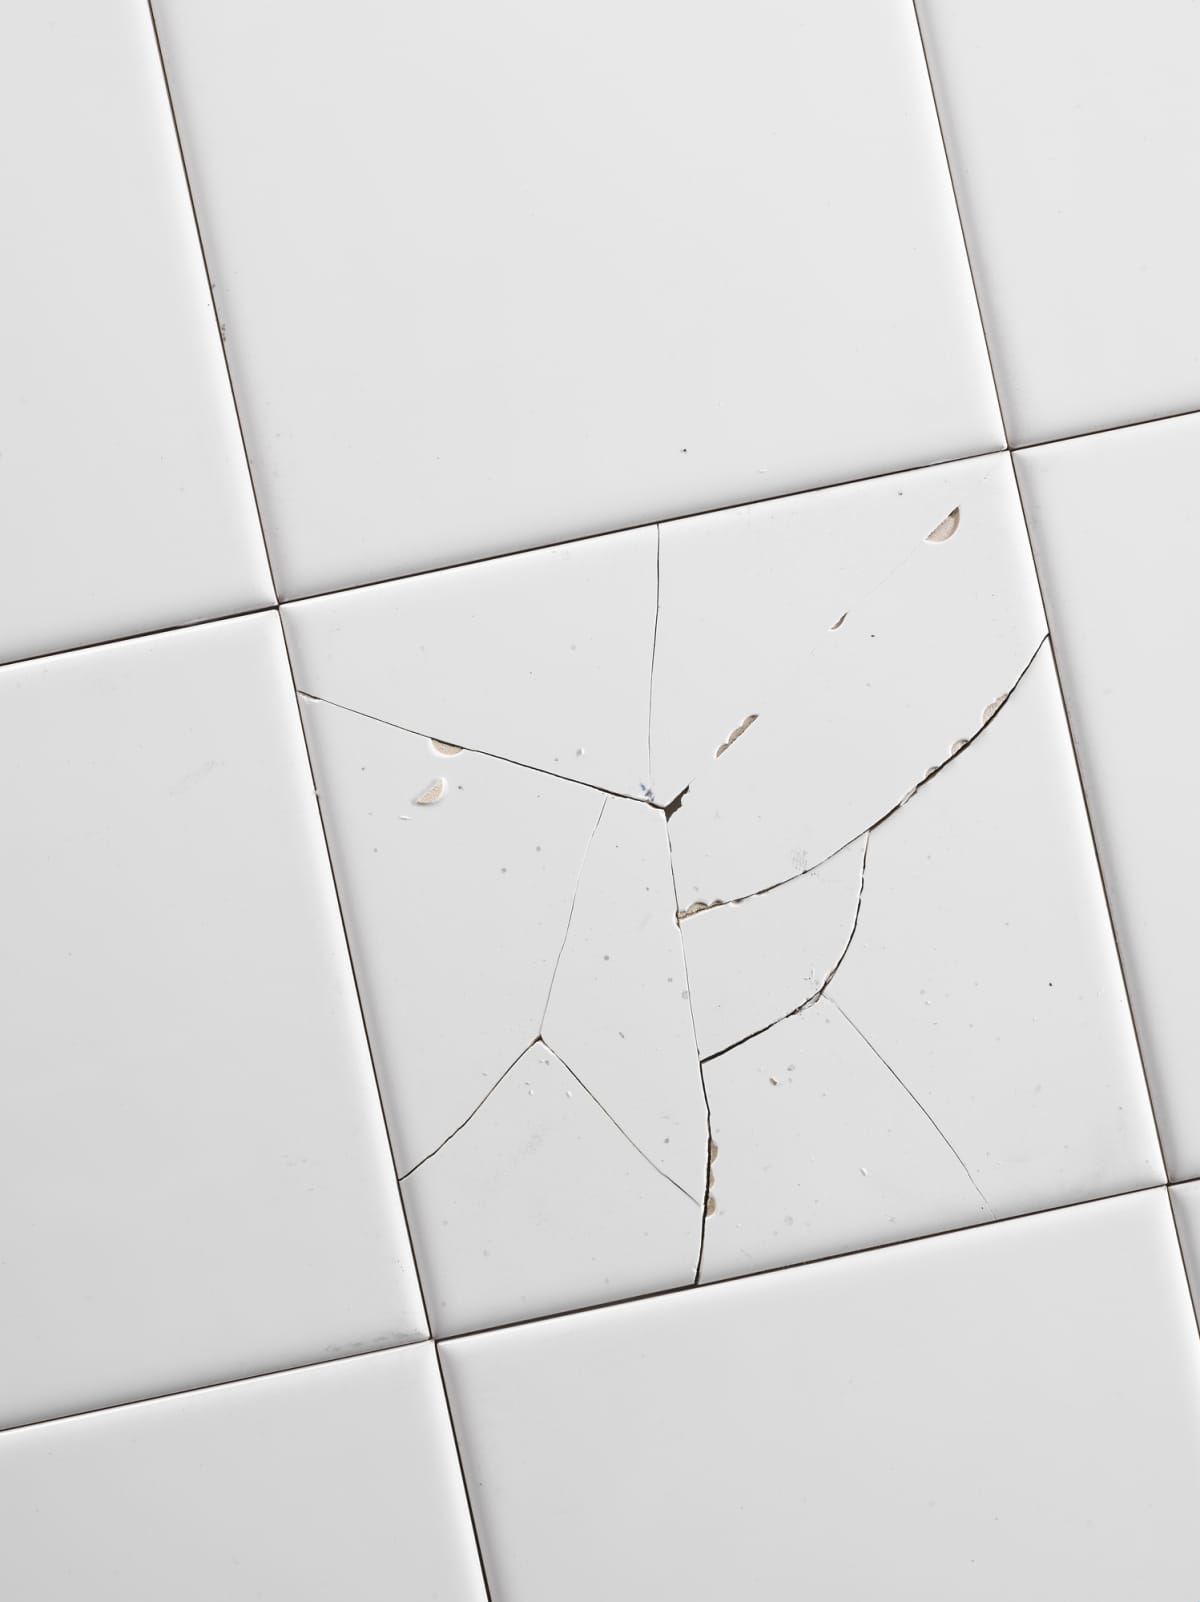 Cracked white tile